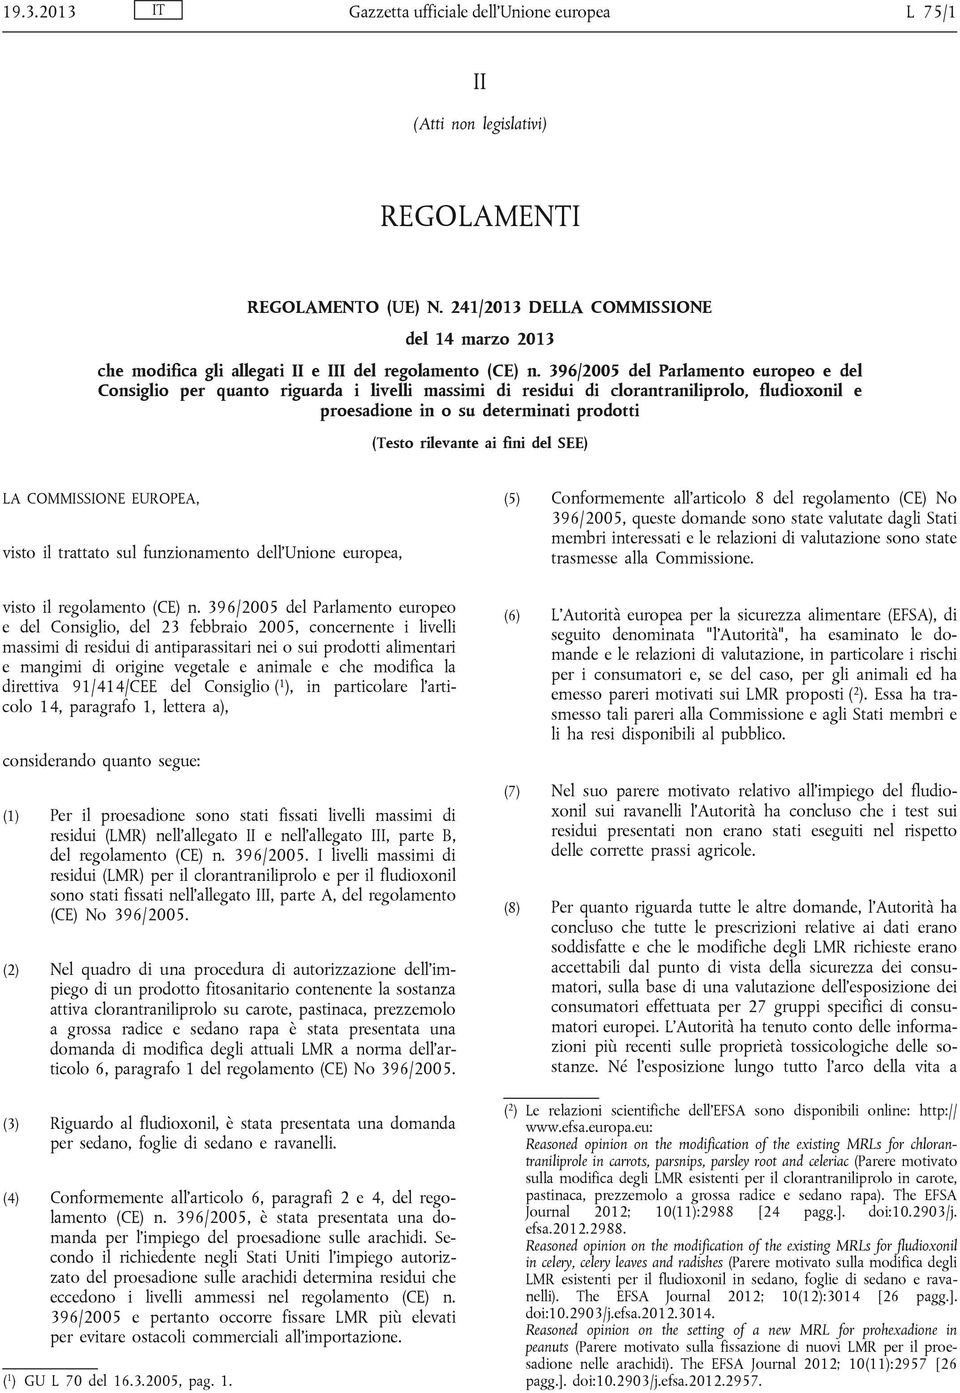 396/2005 del Parlamento europeo e del Consiglio per quanto riguarda i livelli massimi di residui di clorantraniliprolo, fludioxonil e proesadione in o su determinati prodotti (Testo rilevante ai fini